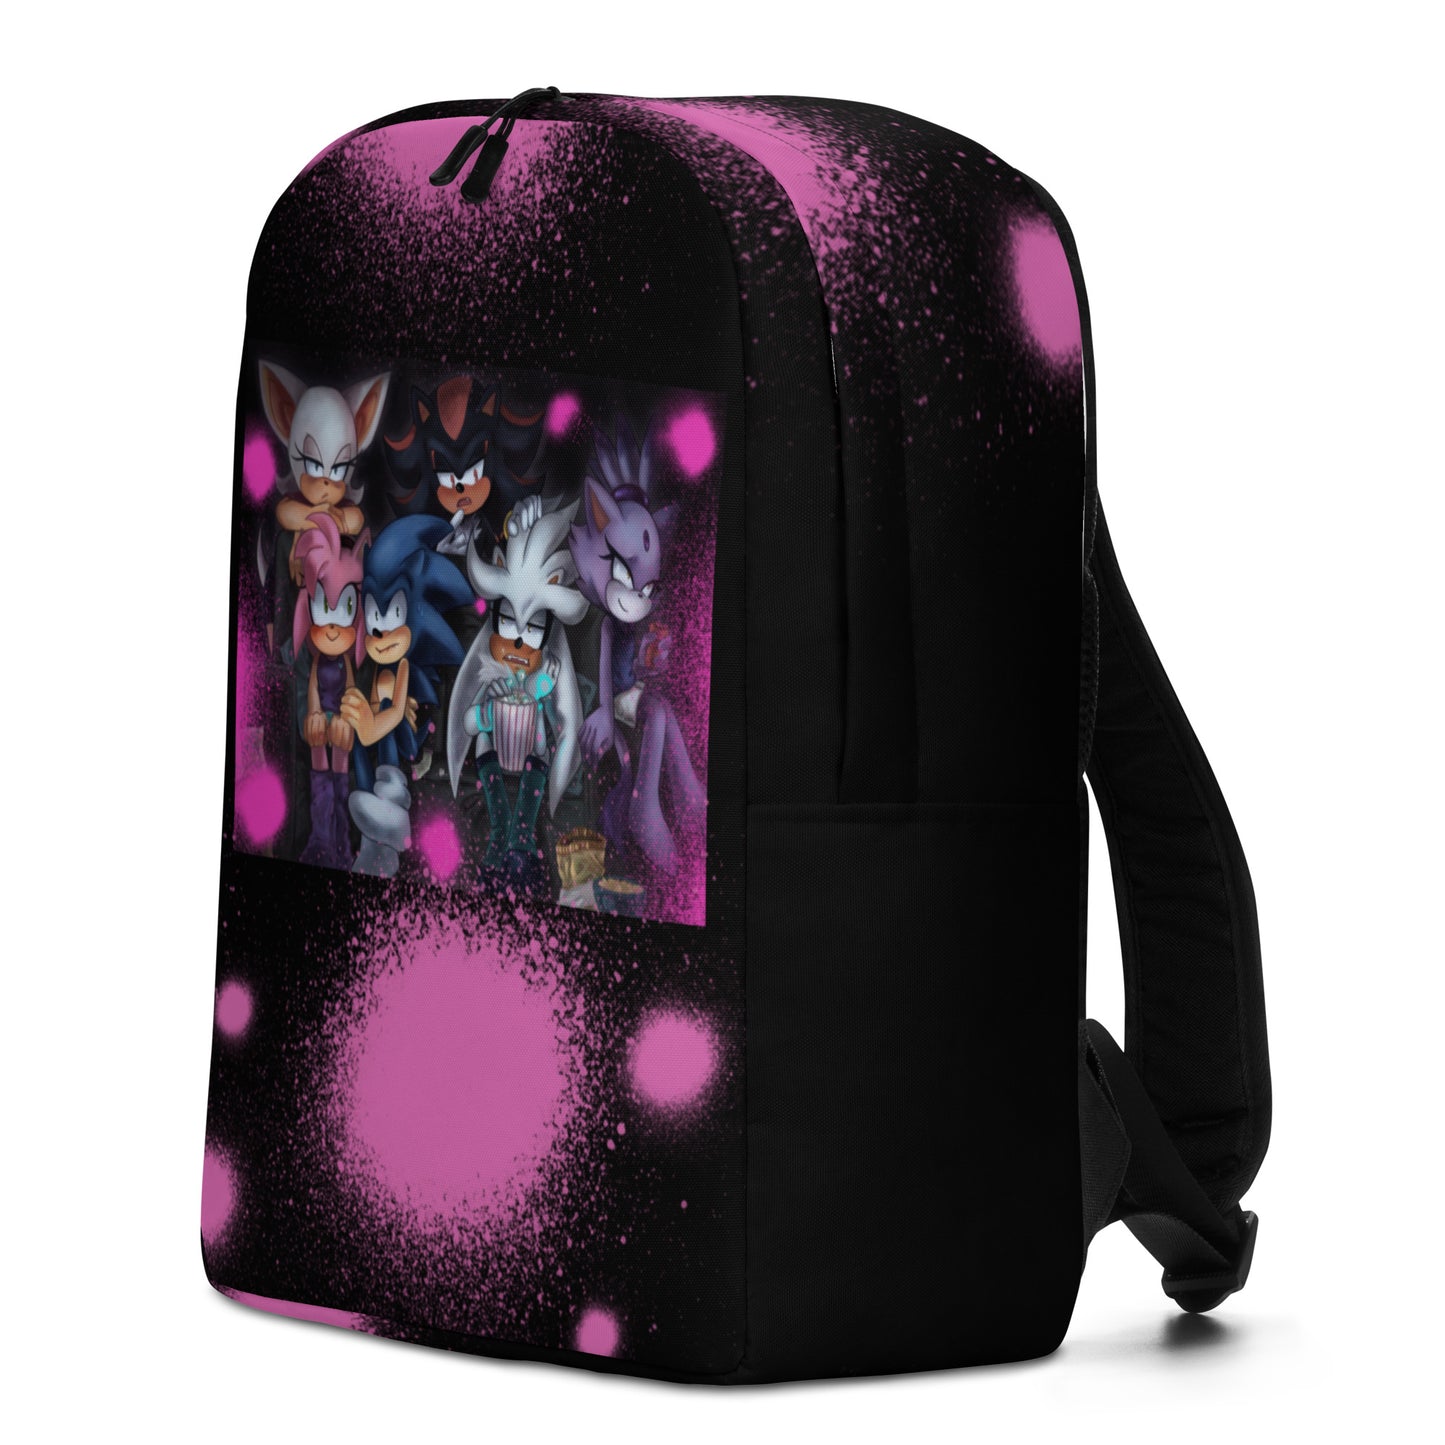 Kaelin Minimalist Backpack